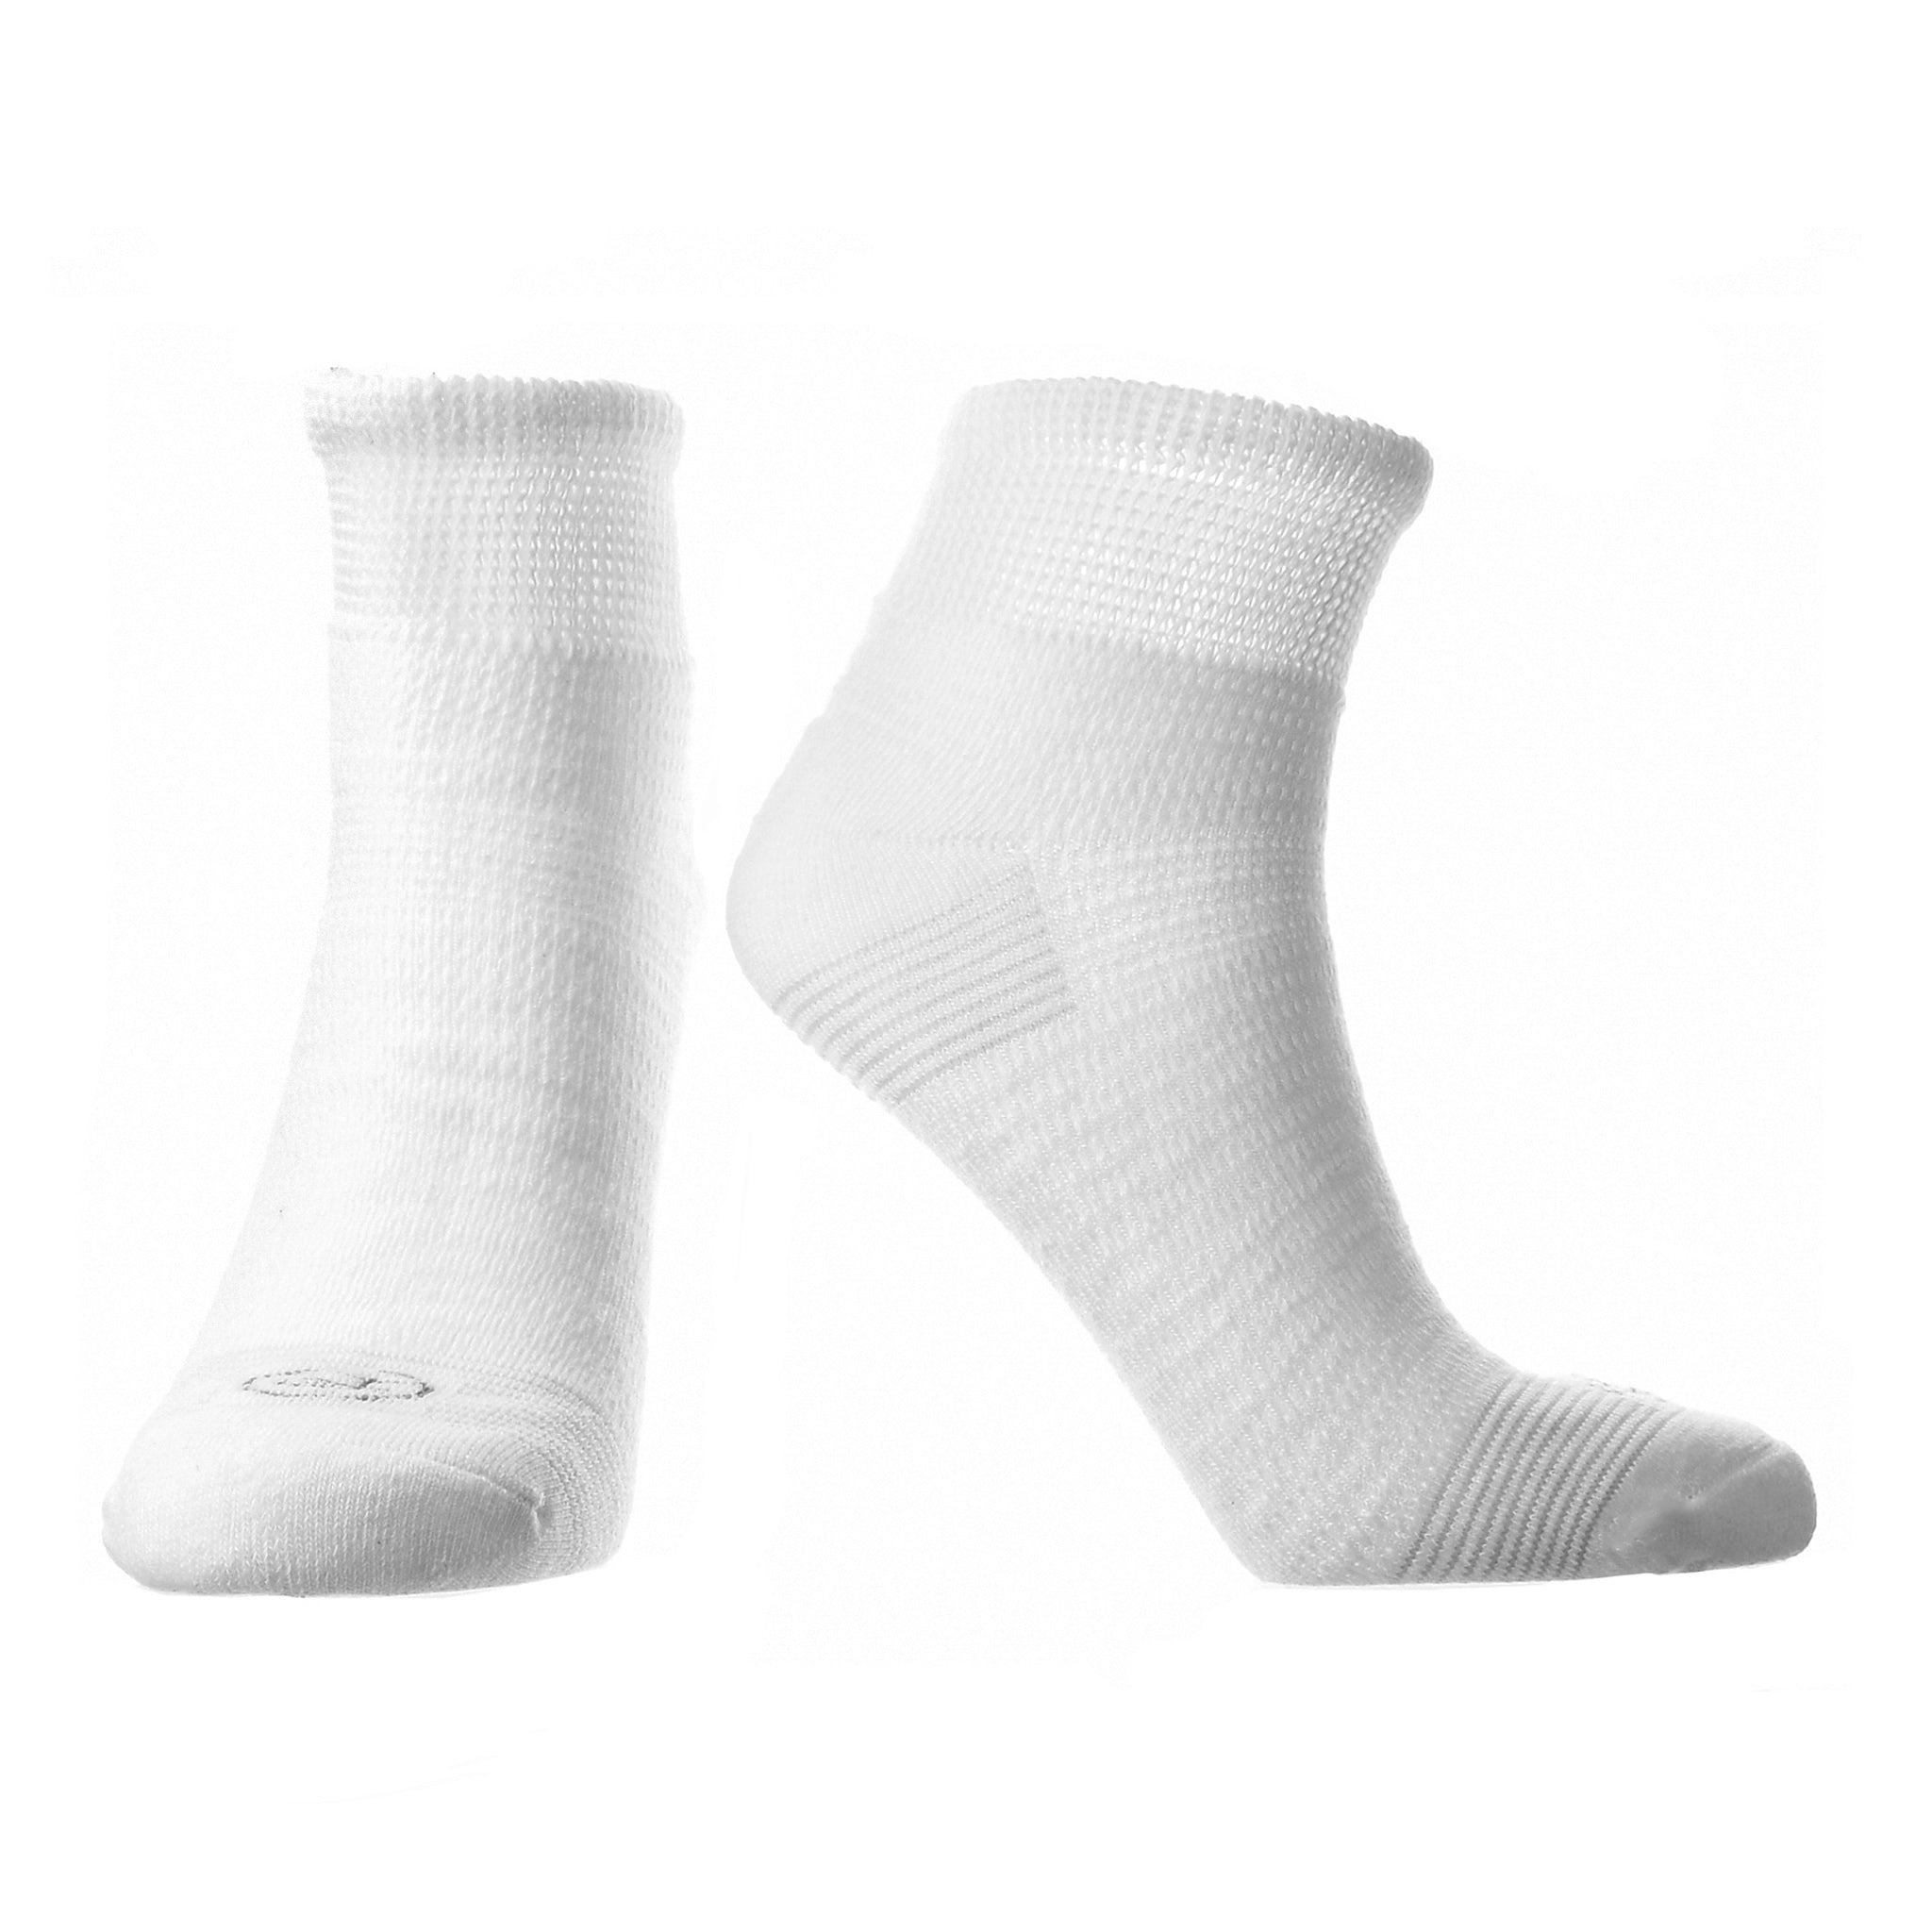 Diabetic Quarter-Length Socks – Doctors Choice Socks